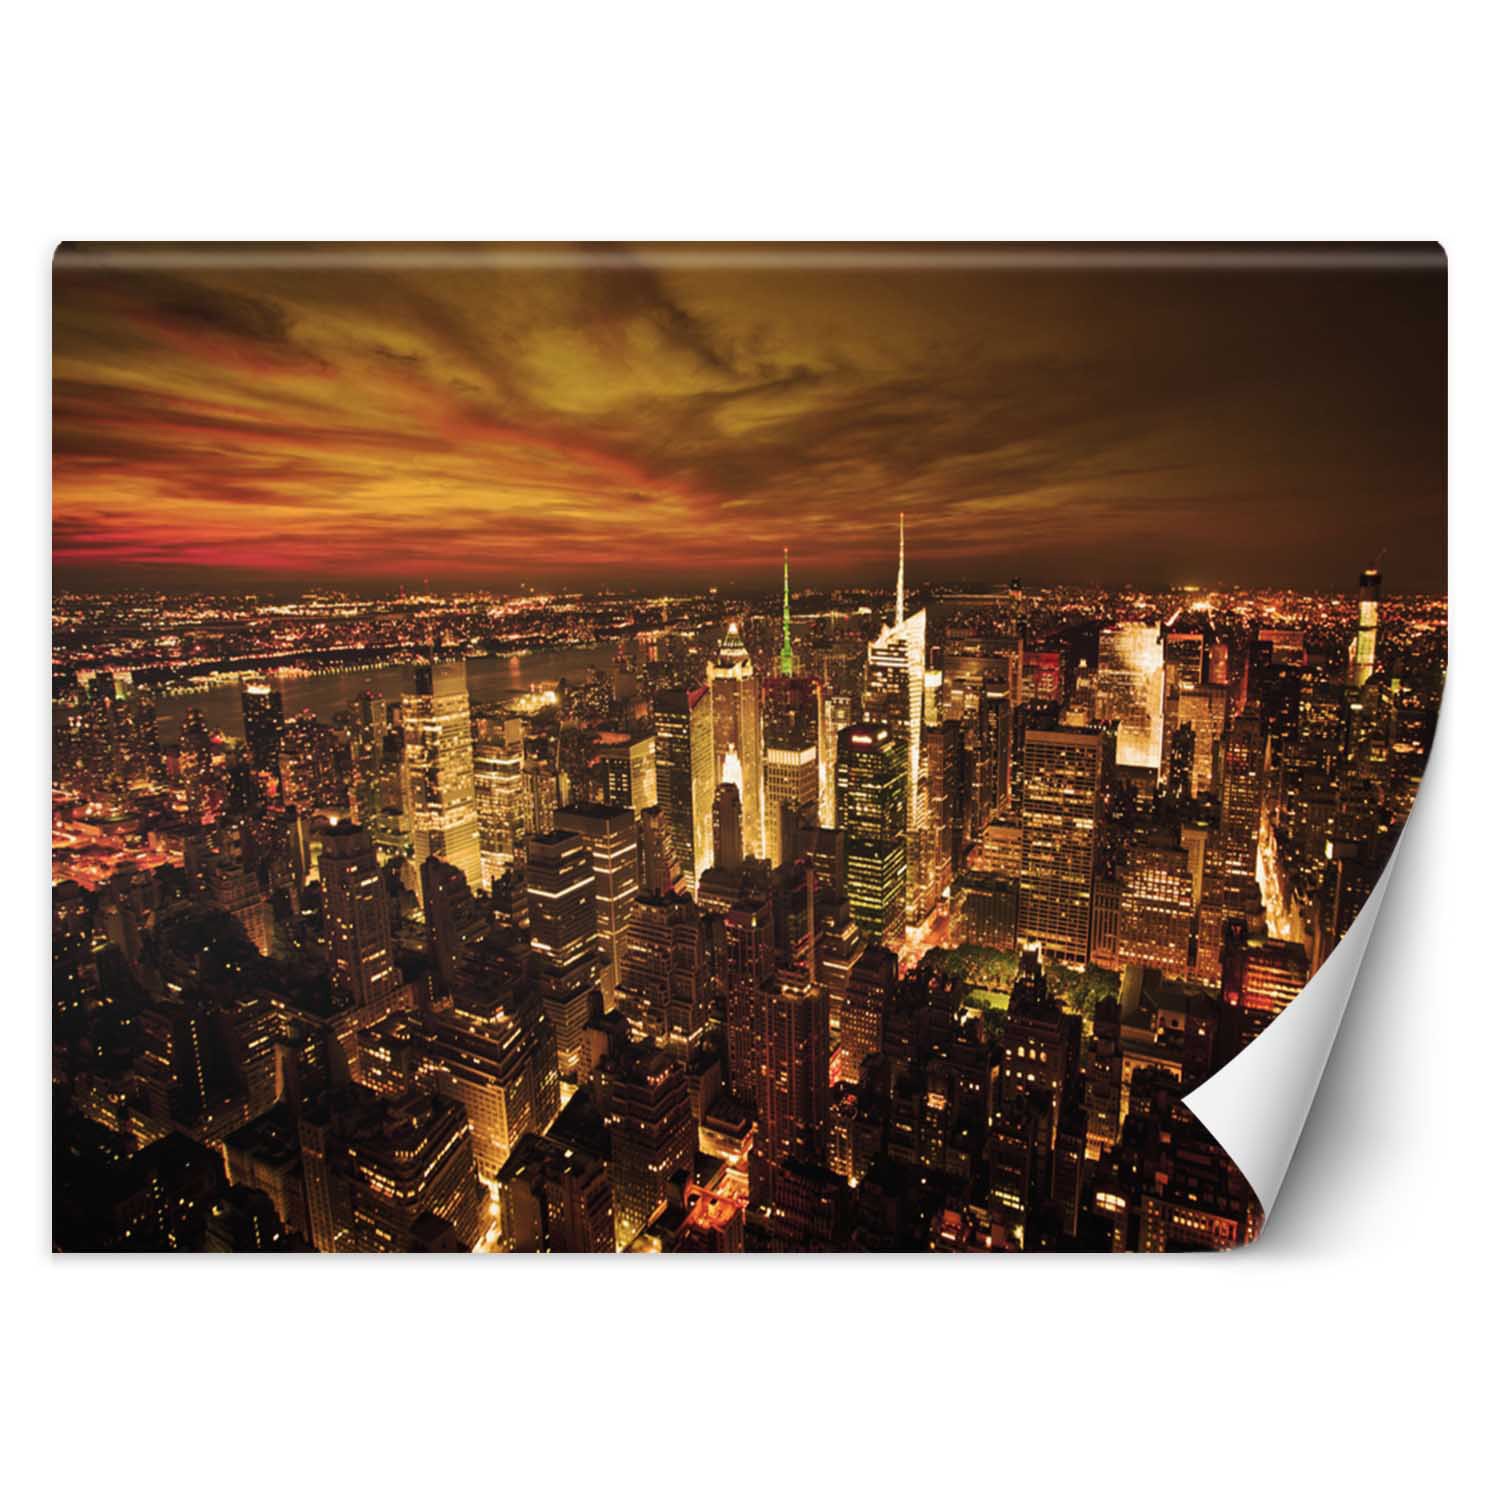 Trend24 – Behang – Midnight Manhattan – Vliesbehang – Fotobehang – Behang Woonkamer – 350x245x2 cm – Incl. behanglijm